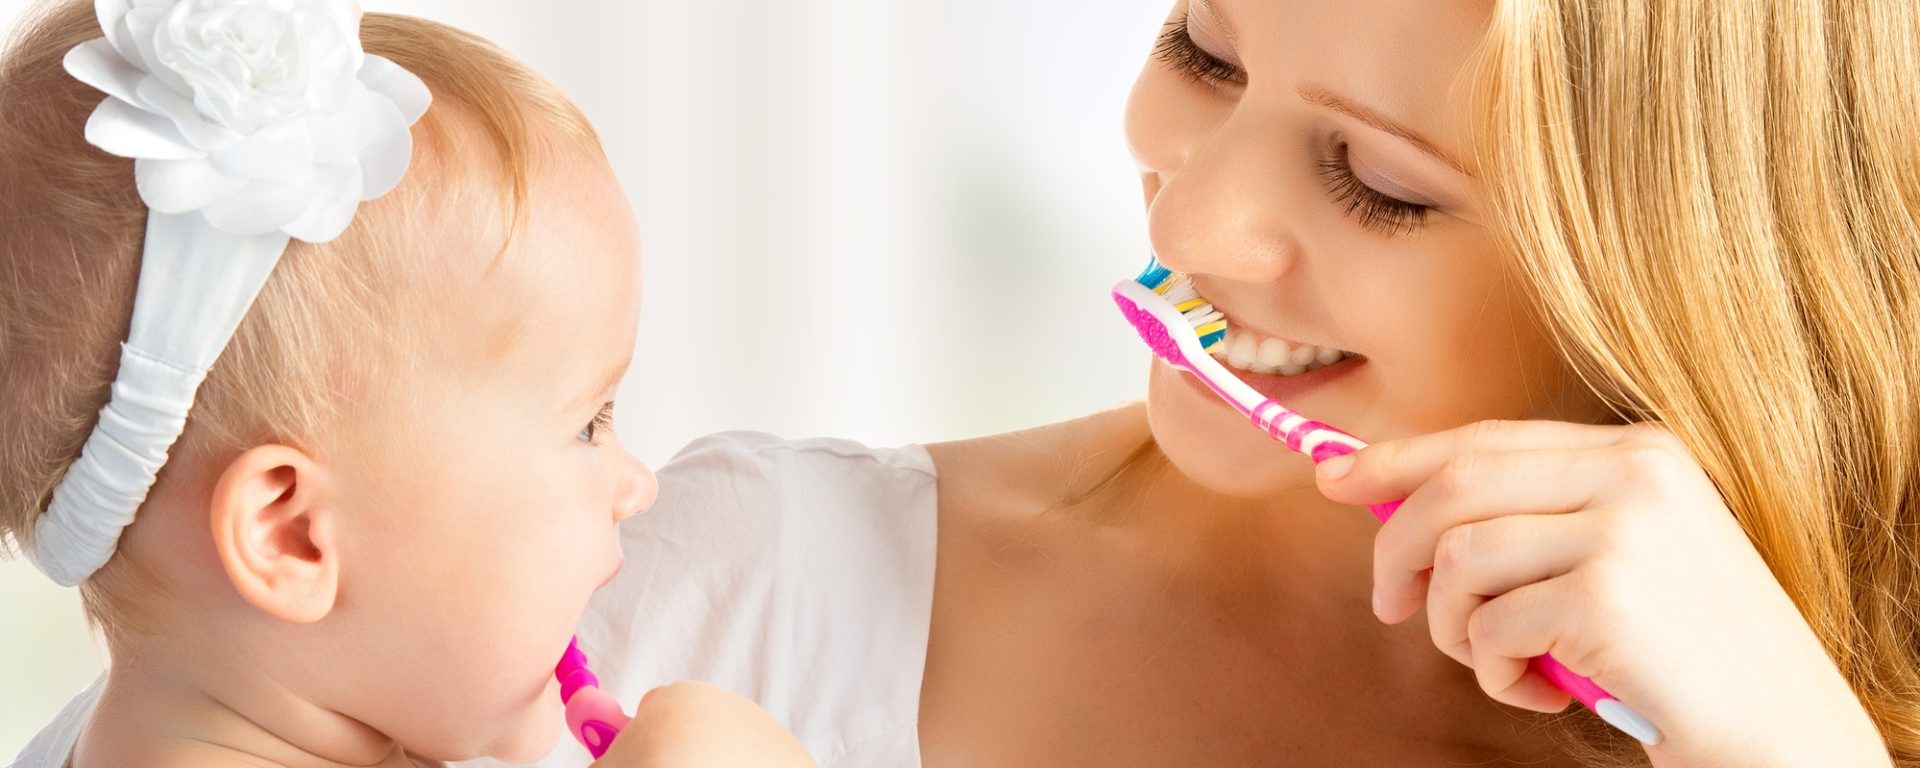 Mundhygiene – die größten Irrtümer über Zähneputzen